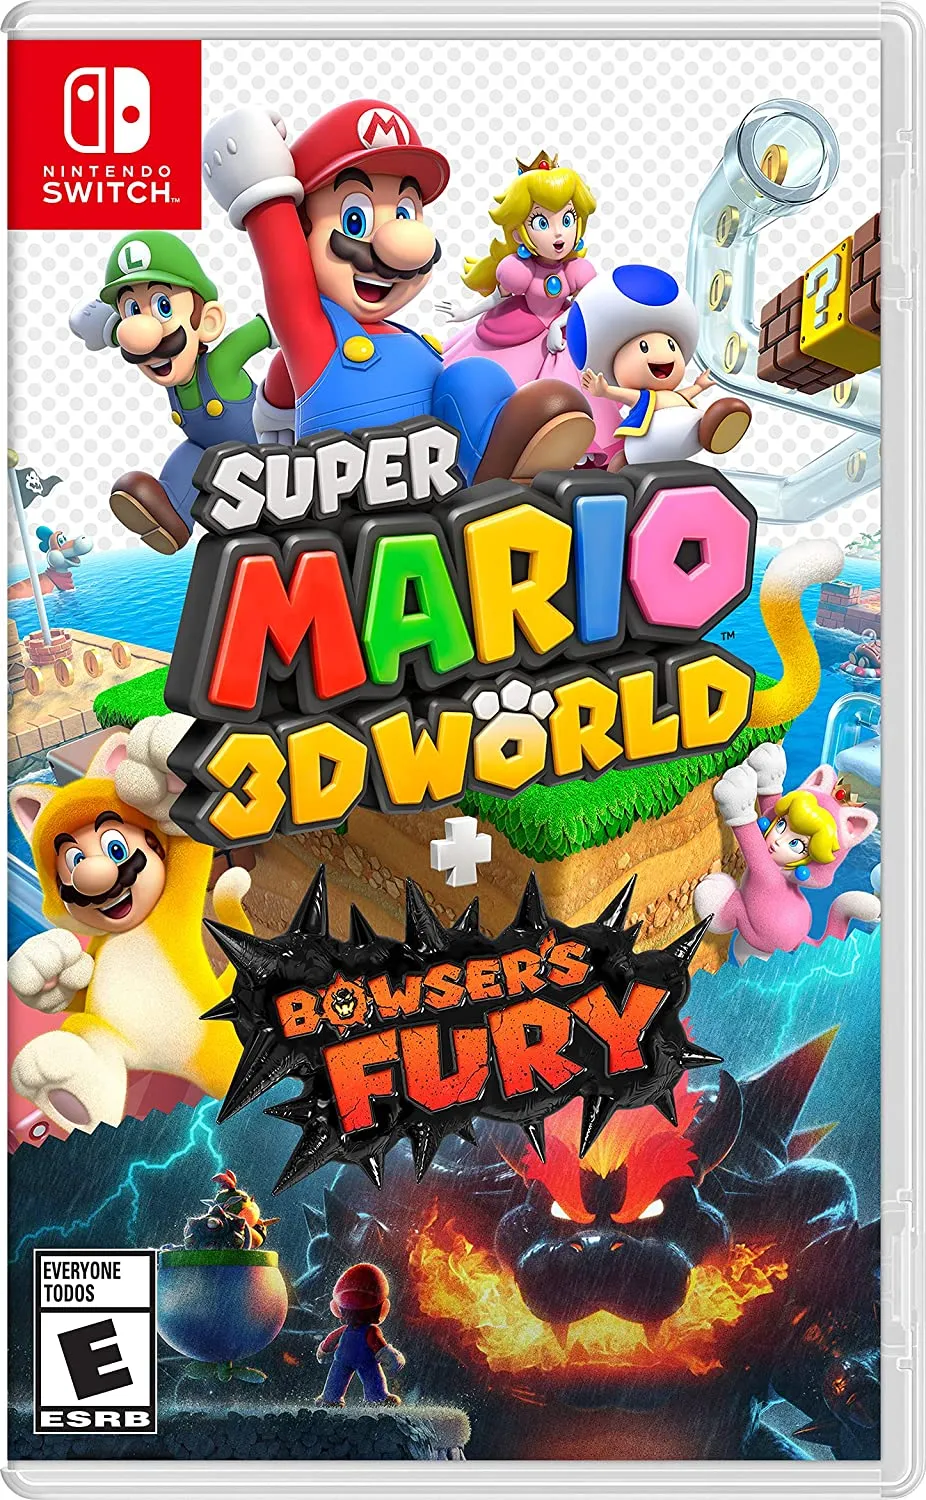 Couverture de Super Mario 3D World + Bowser's Fury pour Nintendo Switch.